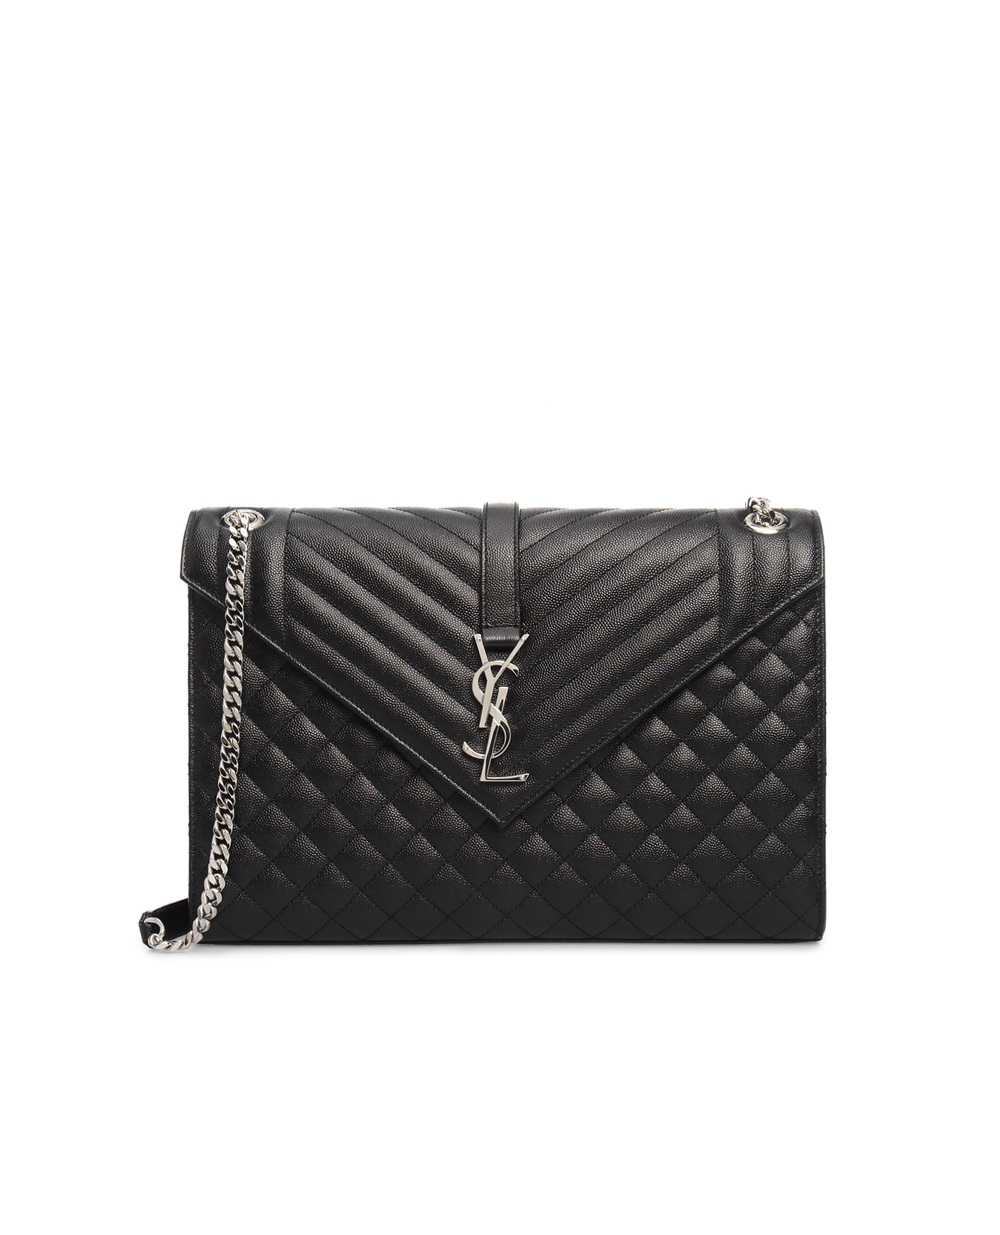 Кожаная сумка Envelope Large Saint Laurent 600166-BOW92, черный цвет • Купить в интернет-магазине Kameron